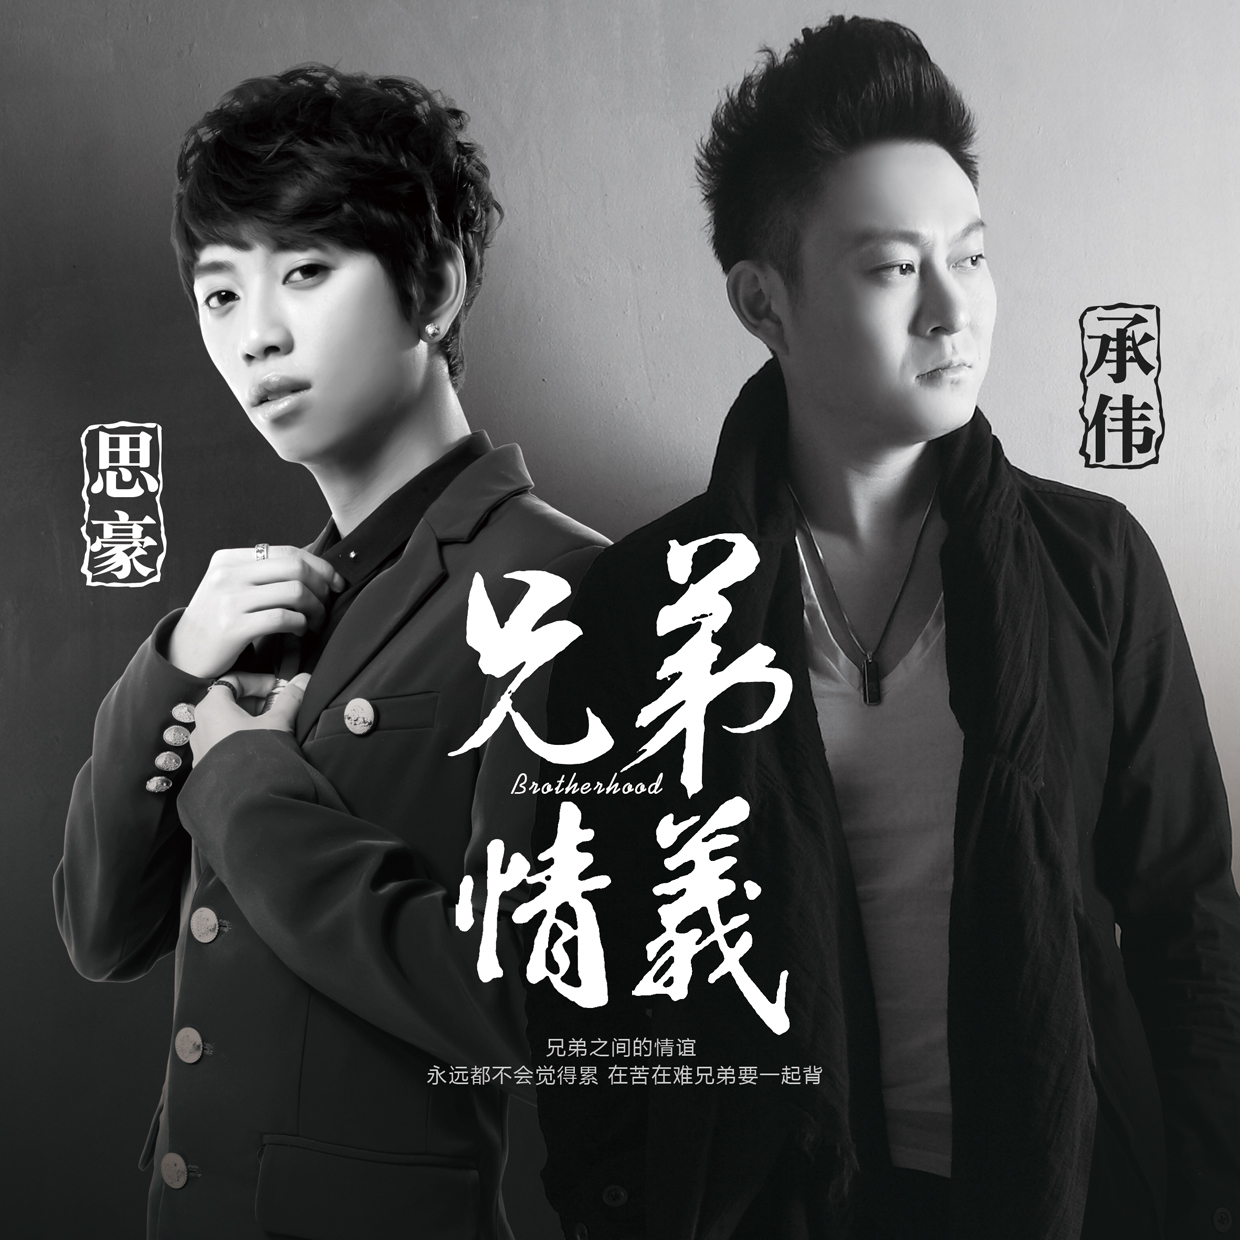 吴庆斌、陈强新歌《一生兄弟》全球首发 用歌诠释兄弟情谊 - 知乎